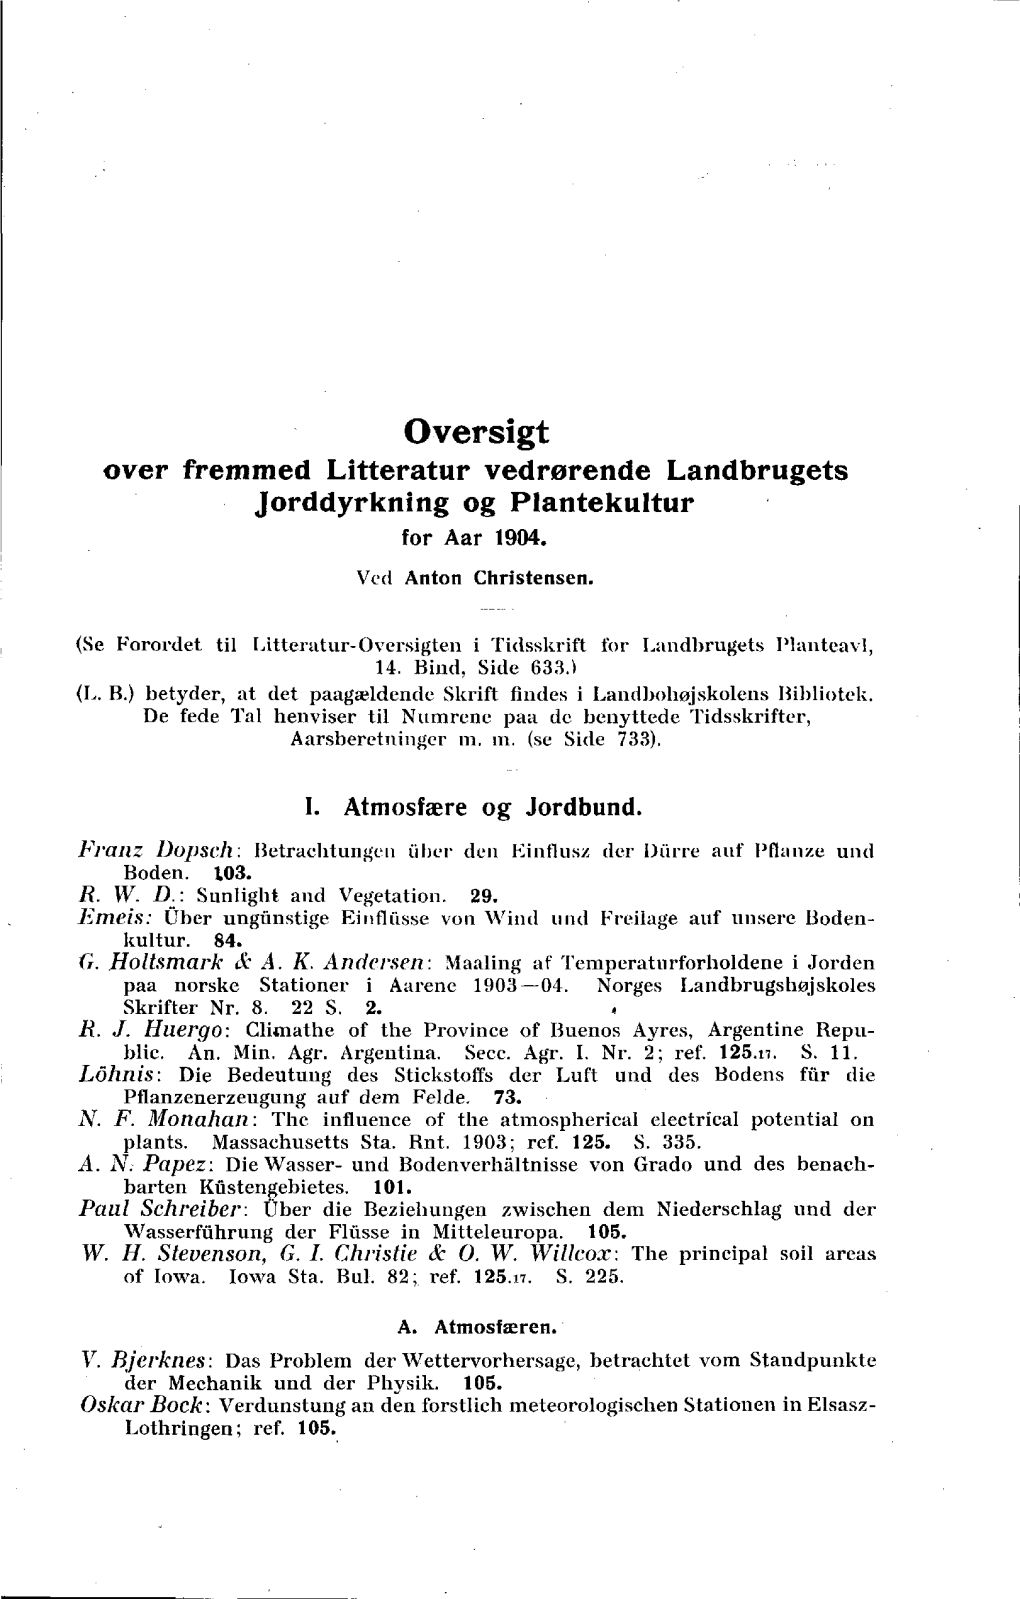 Oversigt Over Fremmed Litteratur Vedrørende Landbrugets Jorddyrkning Og Plantekultur for Aar 1904